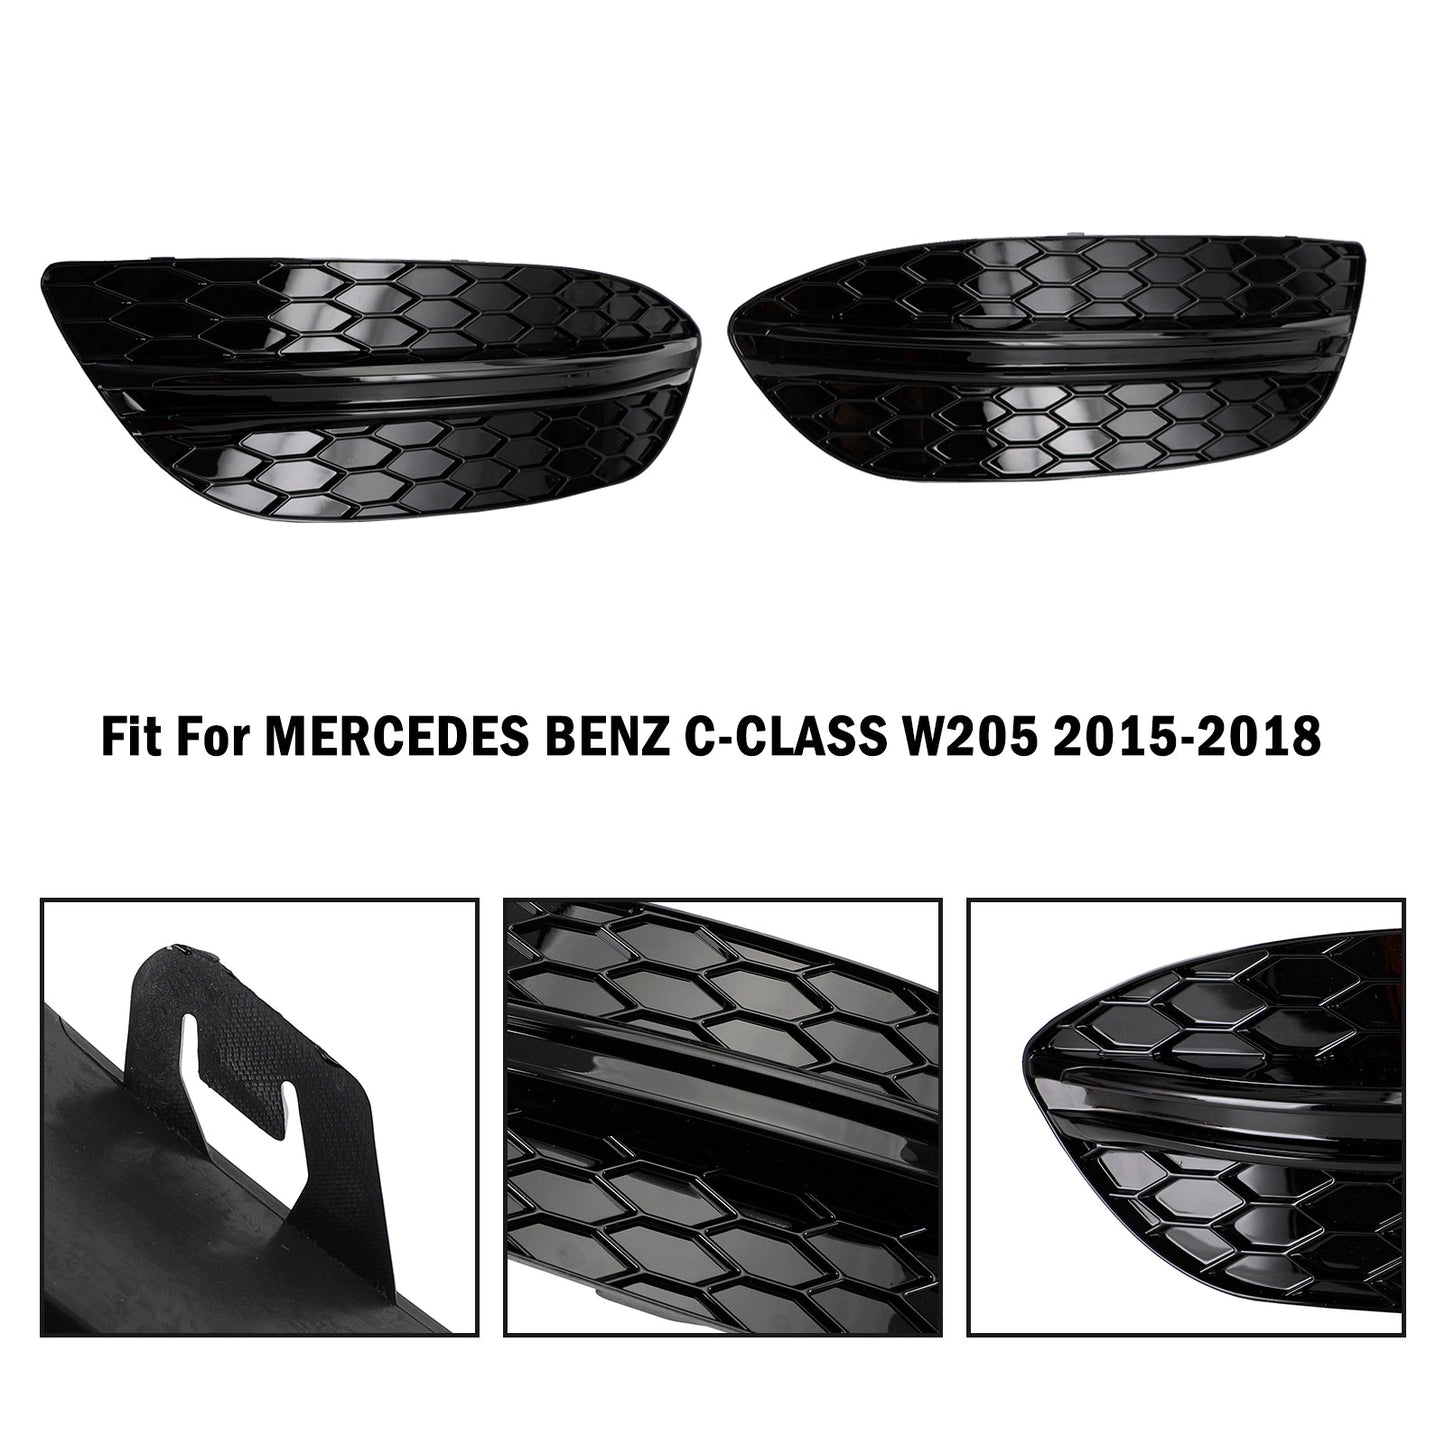 MERCEDES BENZ C-KLASSE W205 2015-2018 Basis Limousine 2PCS Nebelscheinwerferabdeckung